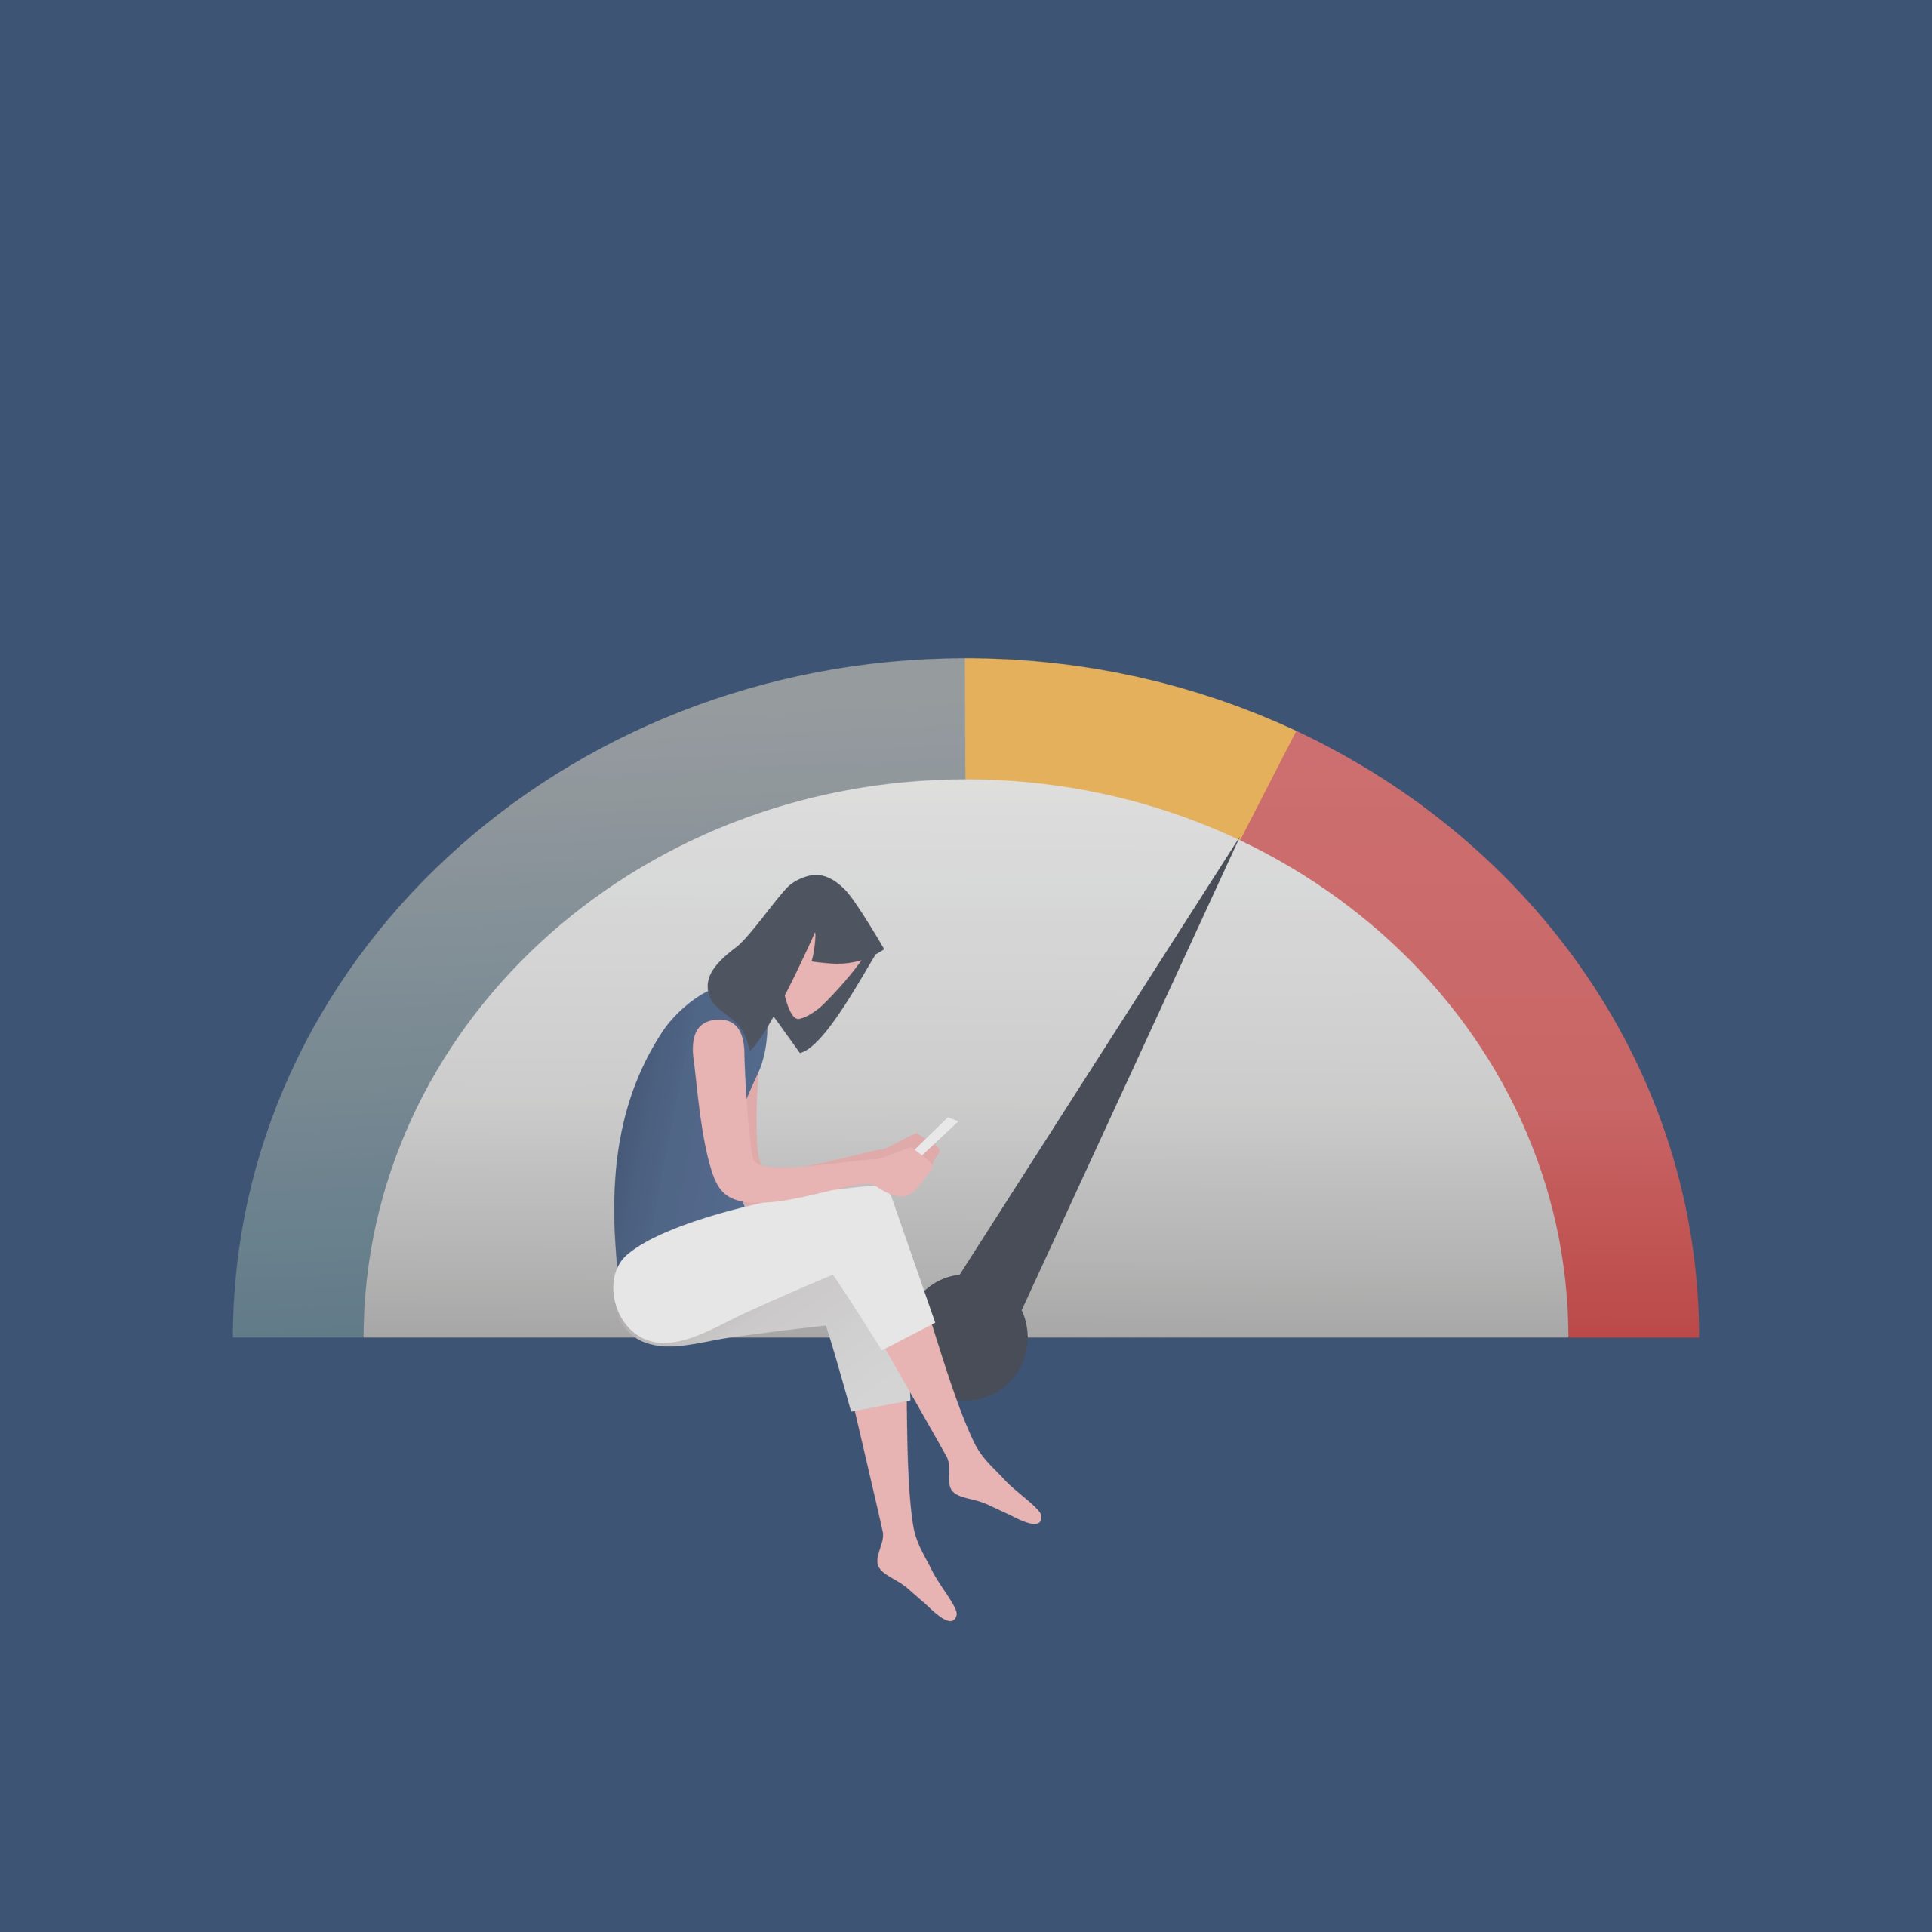 Illustration of a mental health gauge